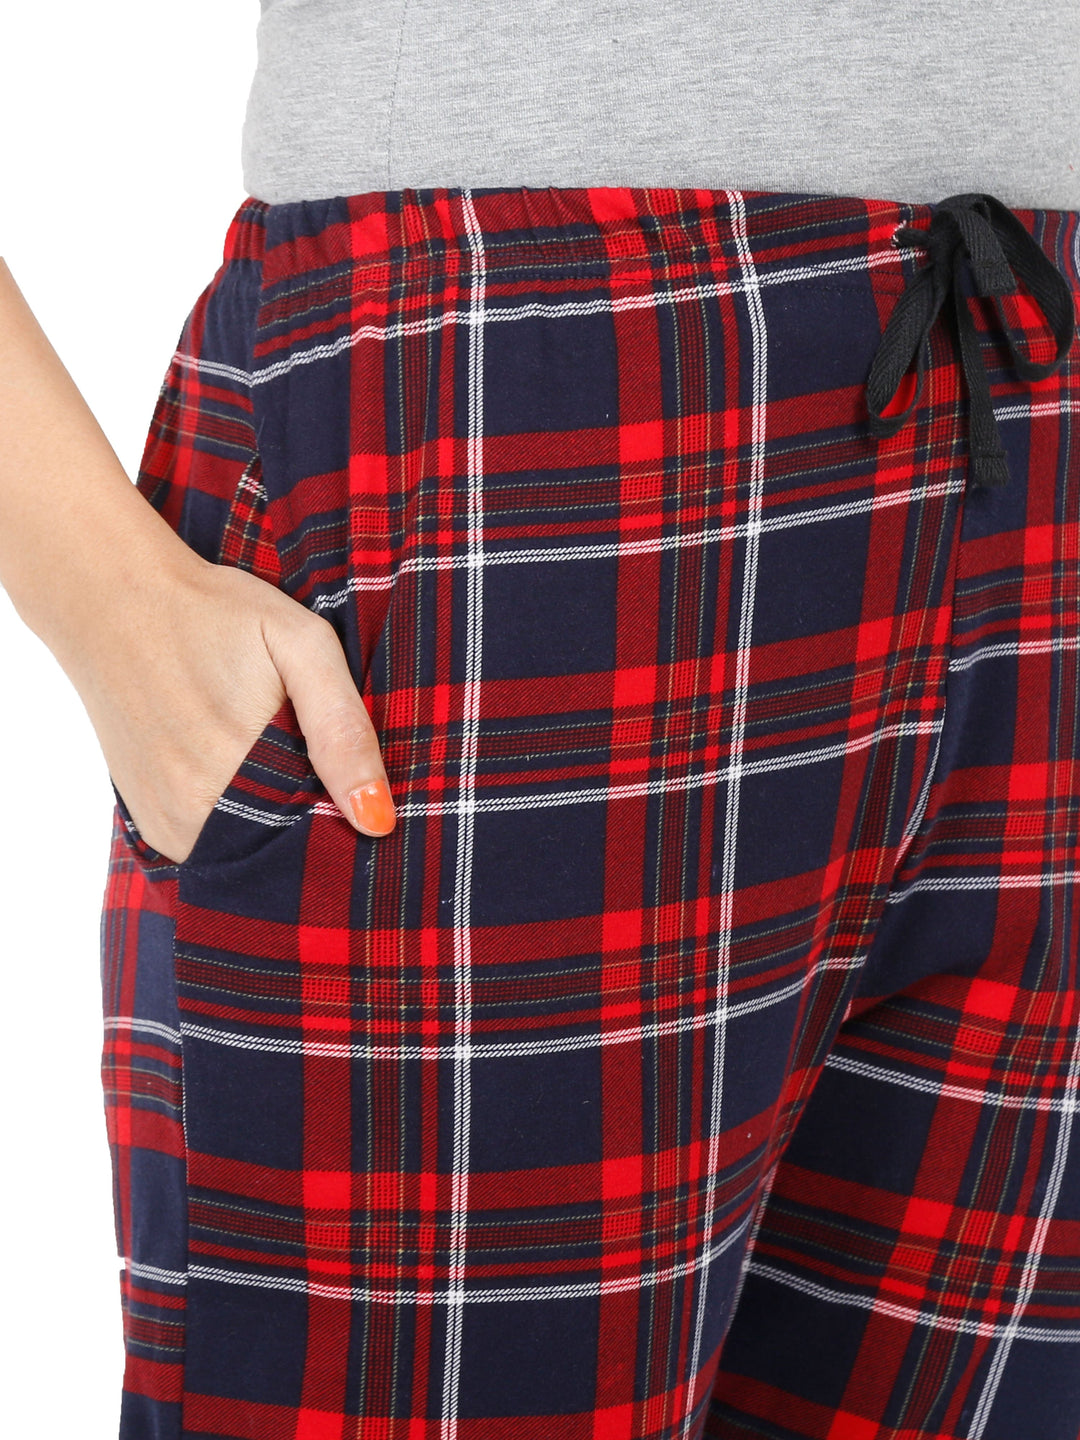  Pyjama  Buy Red Checks Hosiery Cotton Pyjama Lower Night Pants- 9shines label 